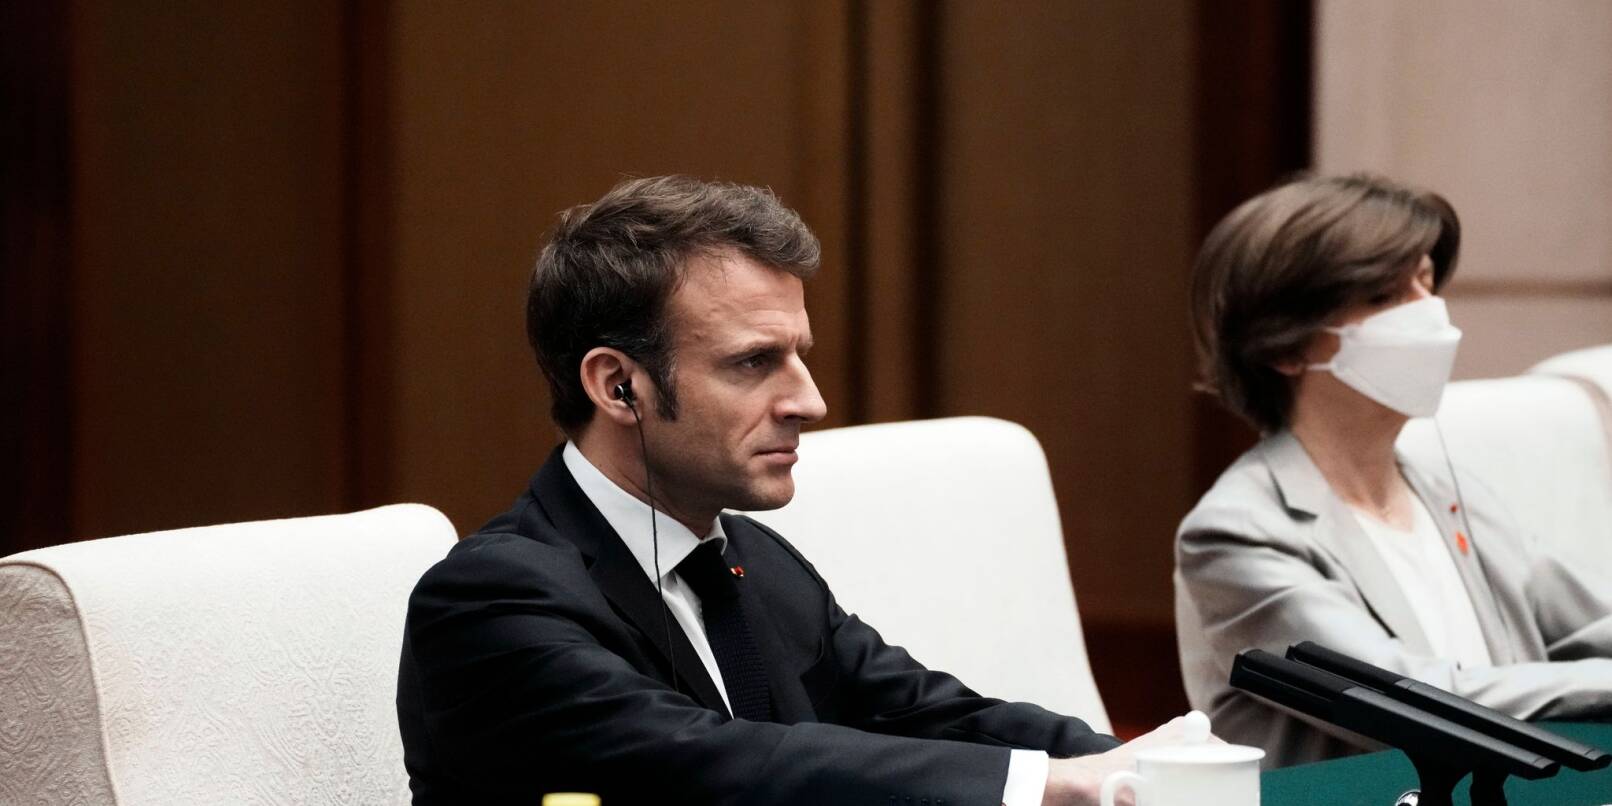 Der französische Präsident Emmanuel Macron wird international für seine Aussage im Zusammenhang mit dem Taiwan-Konflikt kritisiert.